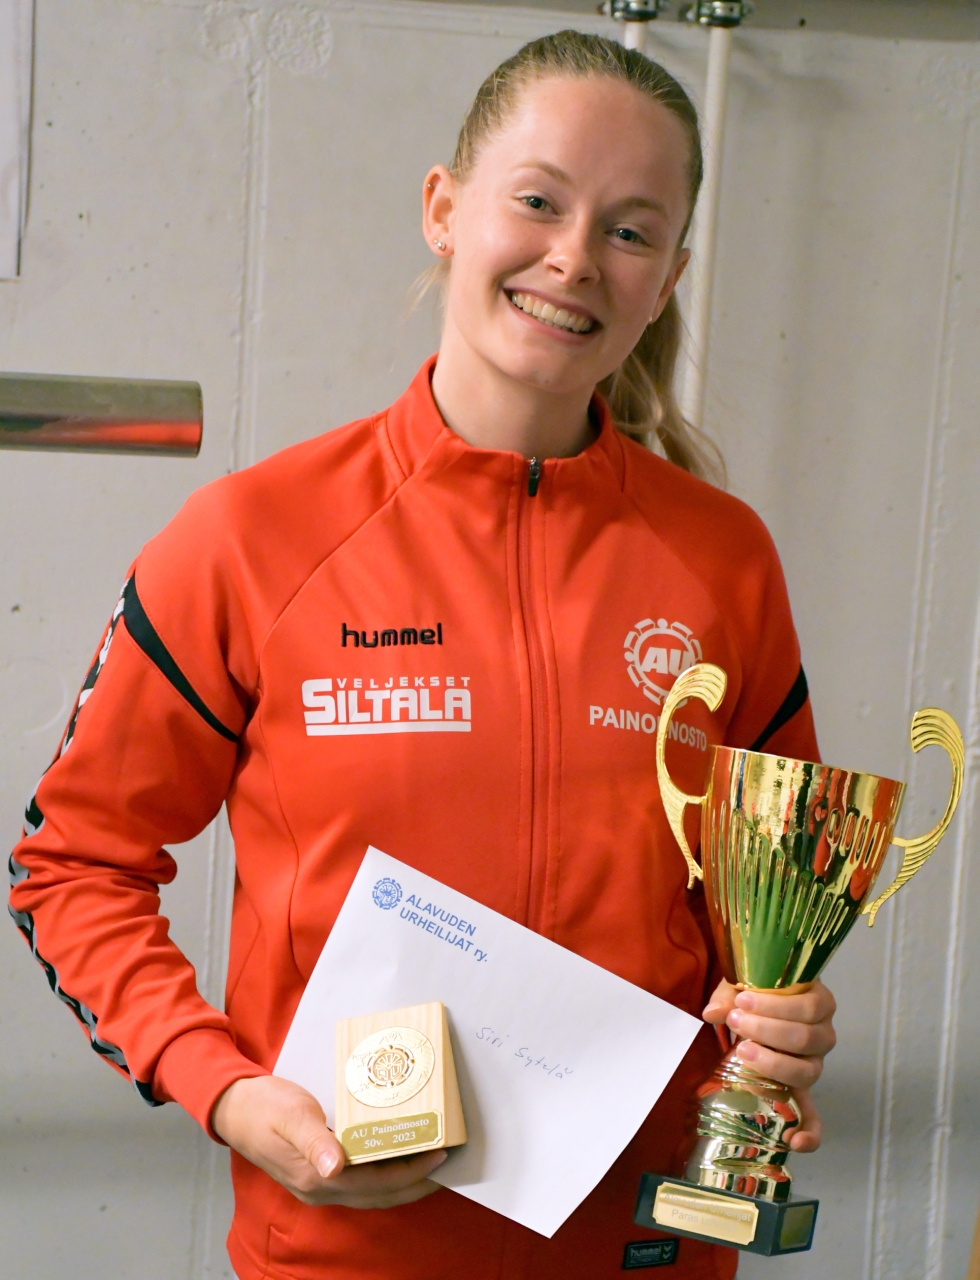 Alavuden Urheilijoiden vuoden 2022 parhaana urheilijana palkittiin painonnostaja Siri Sytelä, joka sai vuoden palkinnon jo viidennen kerran peräkkäin.